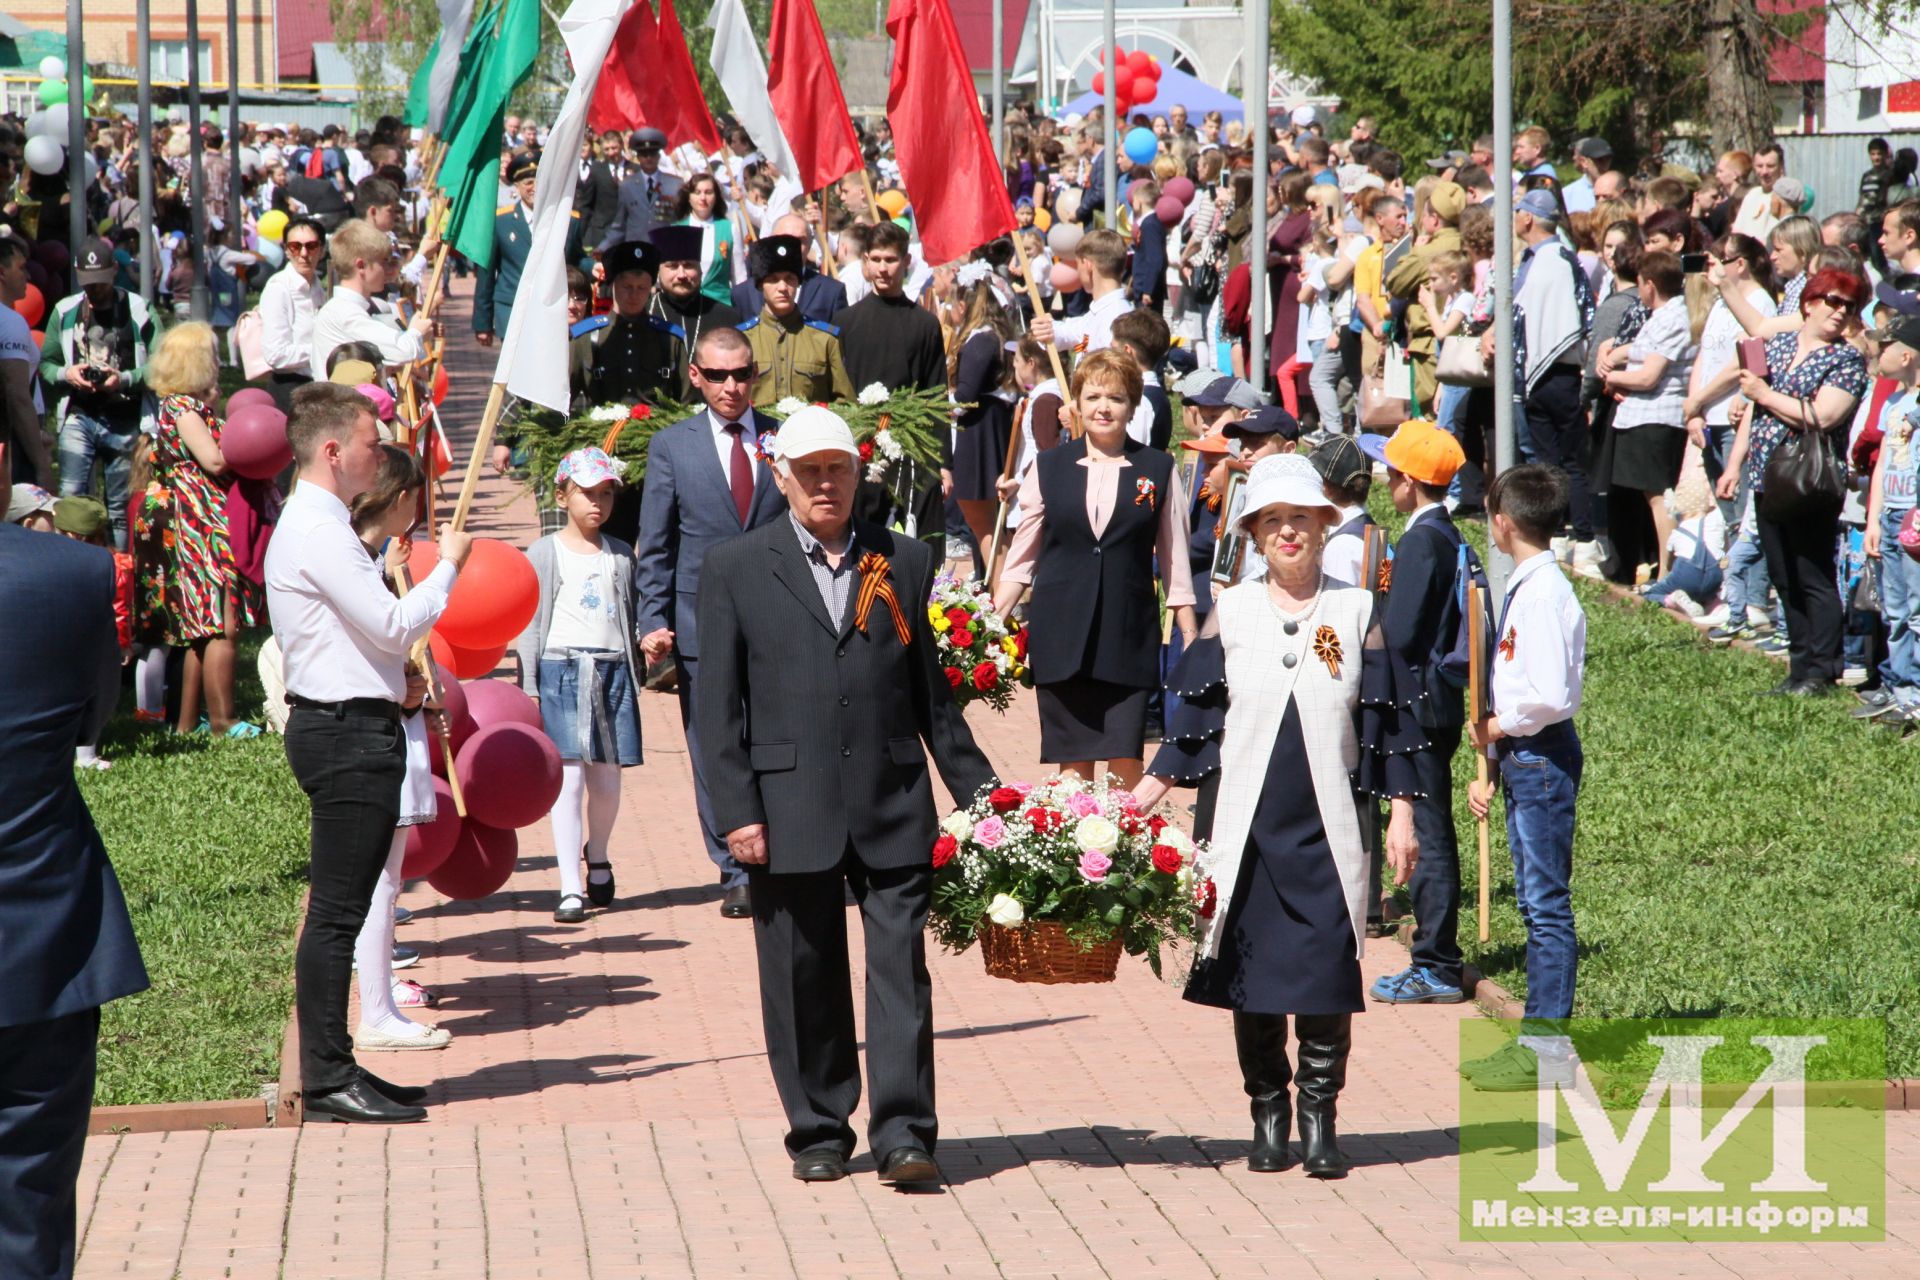 Айдар Салахов: Желаю нам так же встретить и 75-ю годовщину Великой Победы